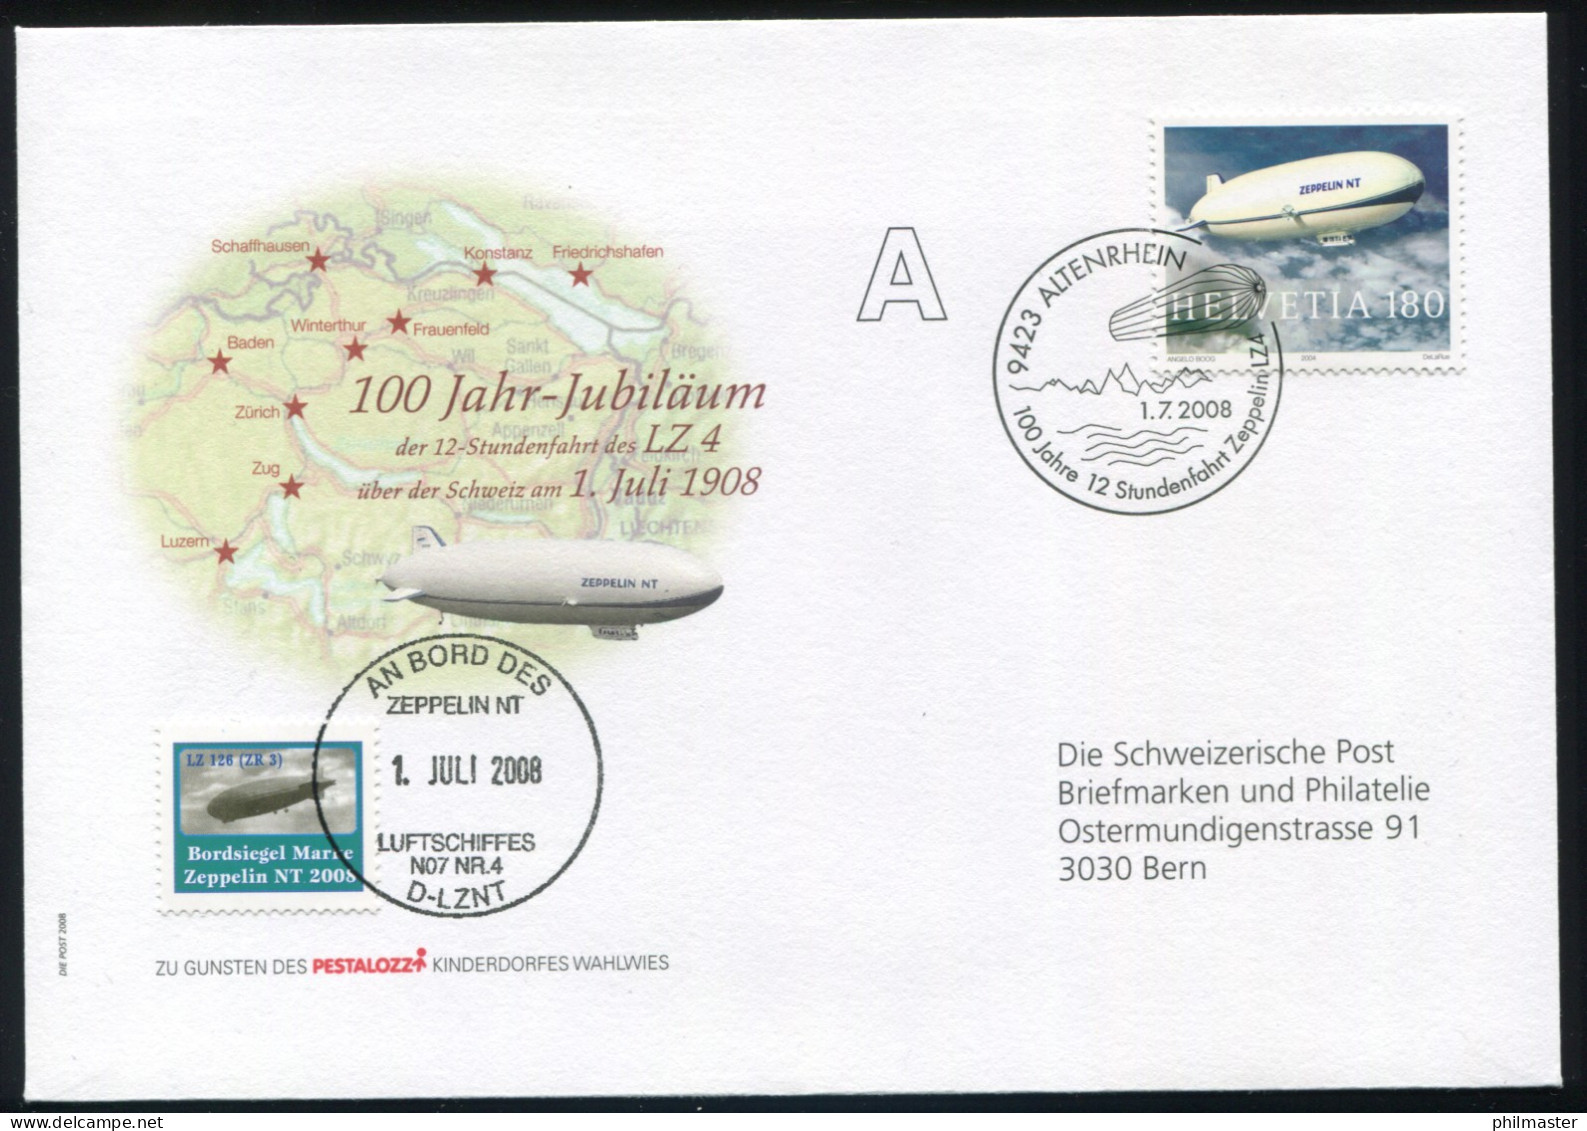 Luftschiffspost DKL 116 Fahrt LZ4 D-LZNT über Schweiz SSt ALTENRHEIN 1.7.2008 - Zeppeline